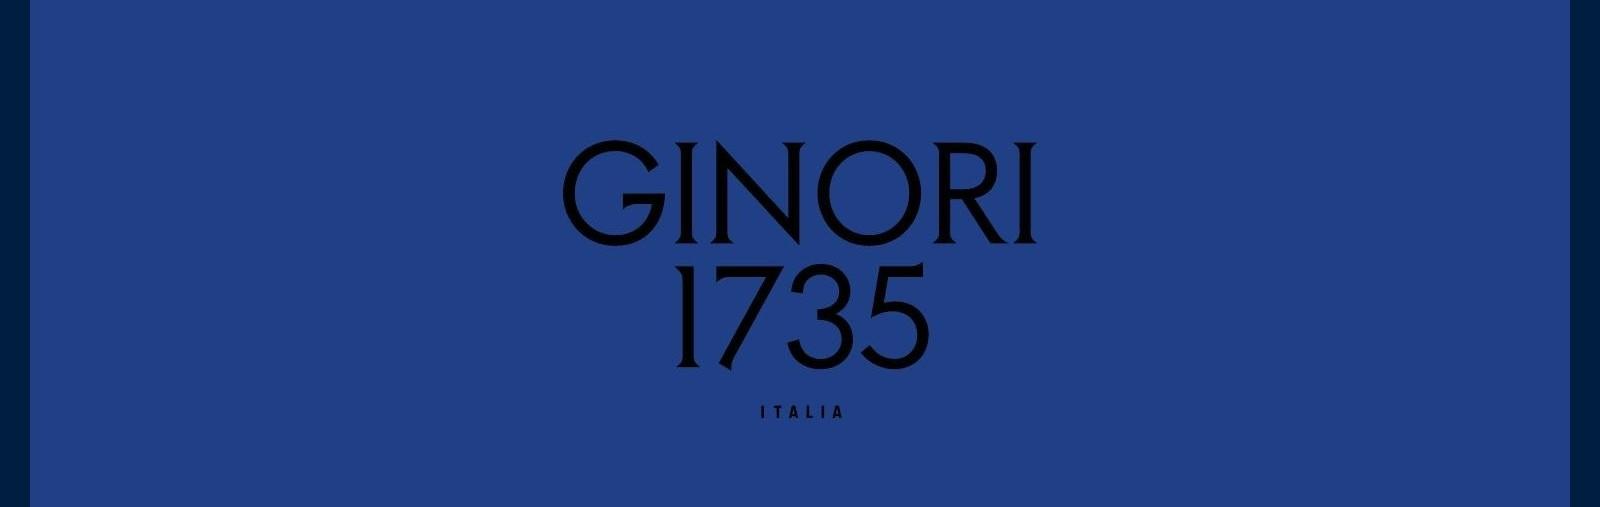 Ginori 1735 lifestyle products slide 1